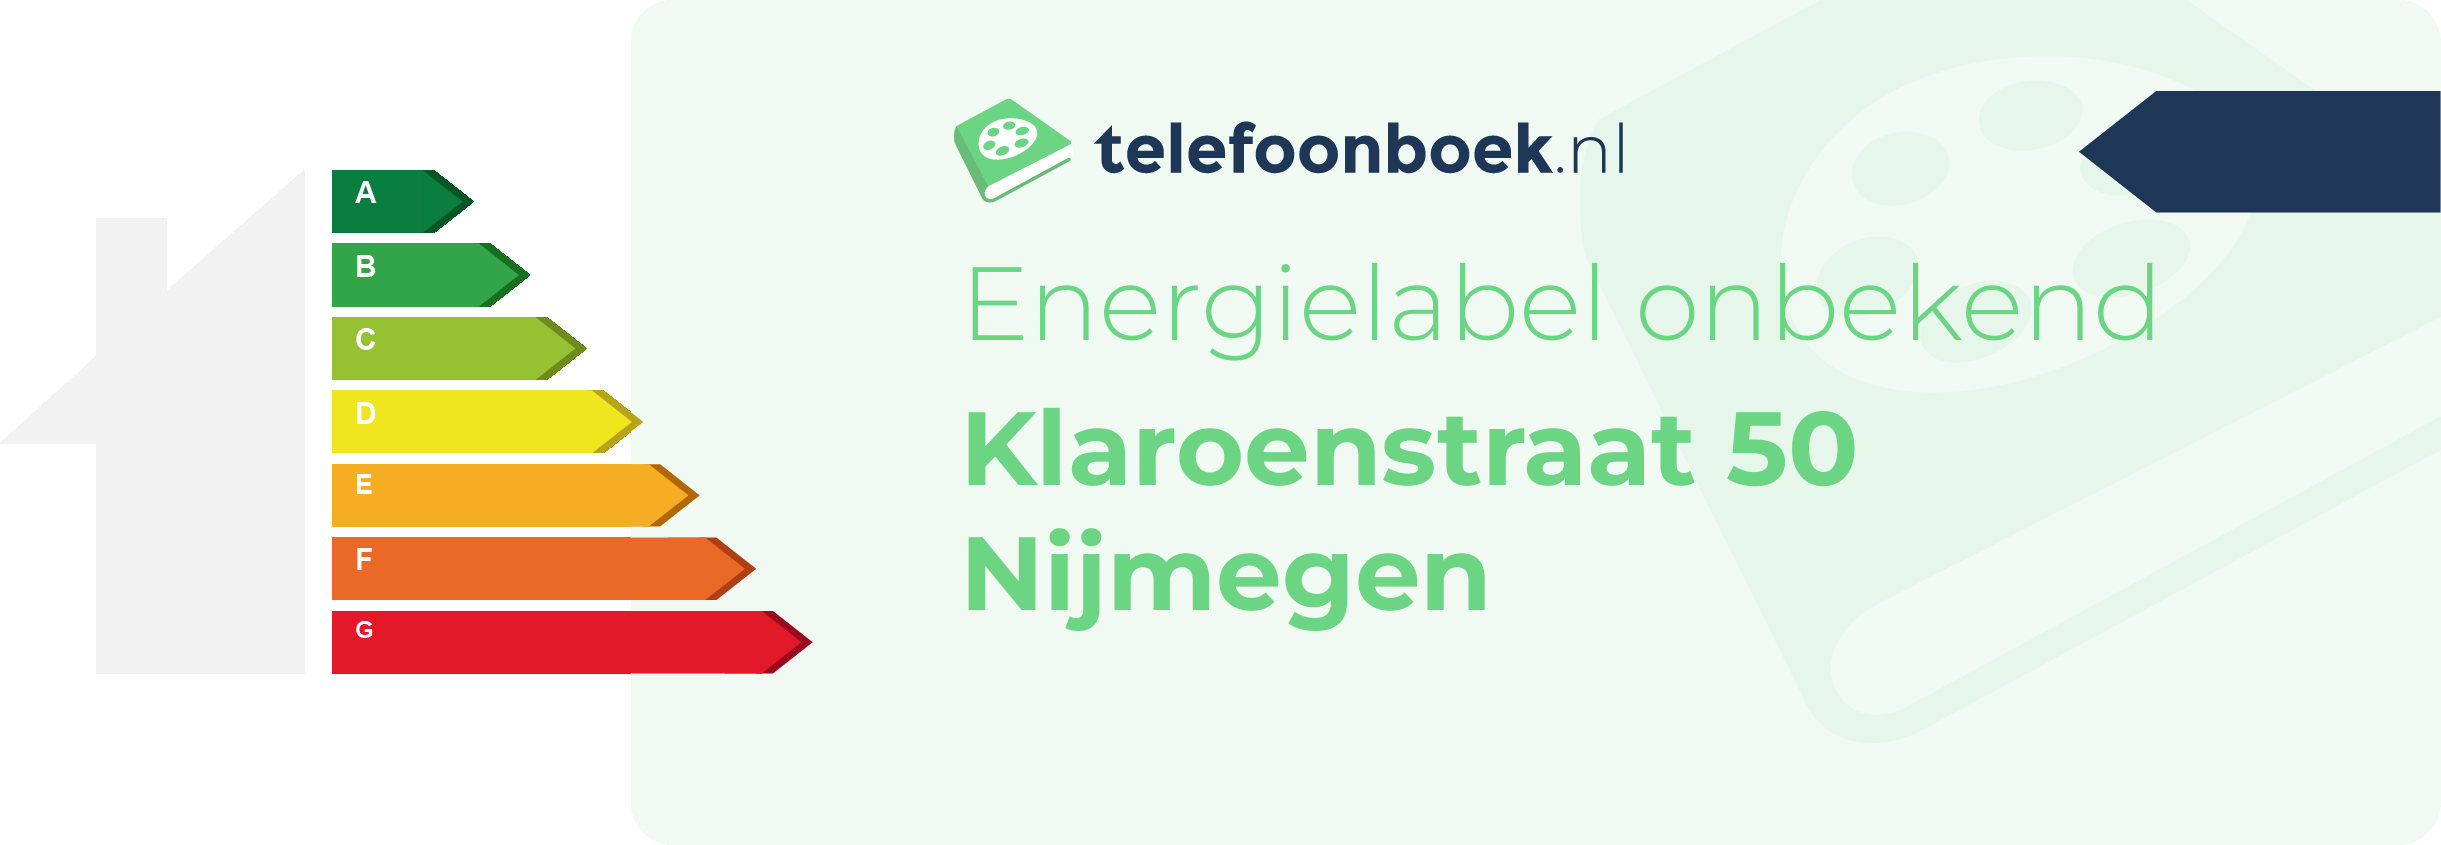 Energielabel Klaroenstraat 50 Nijmegen